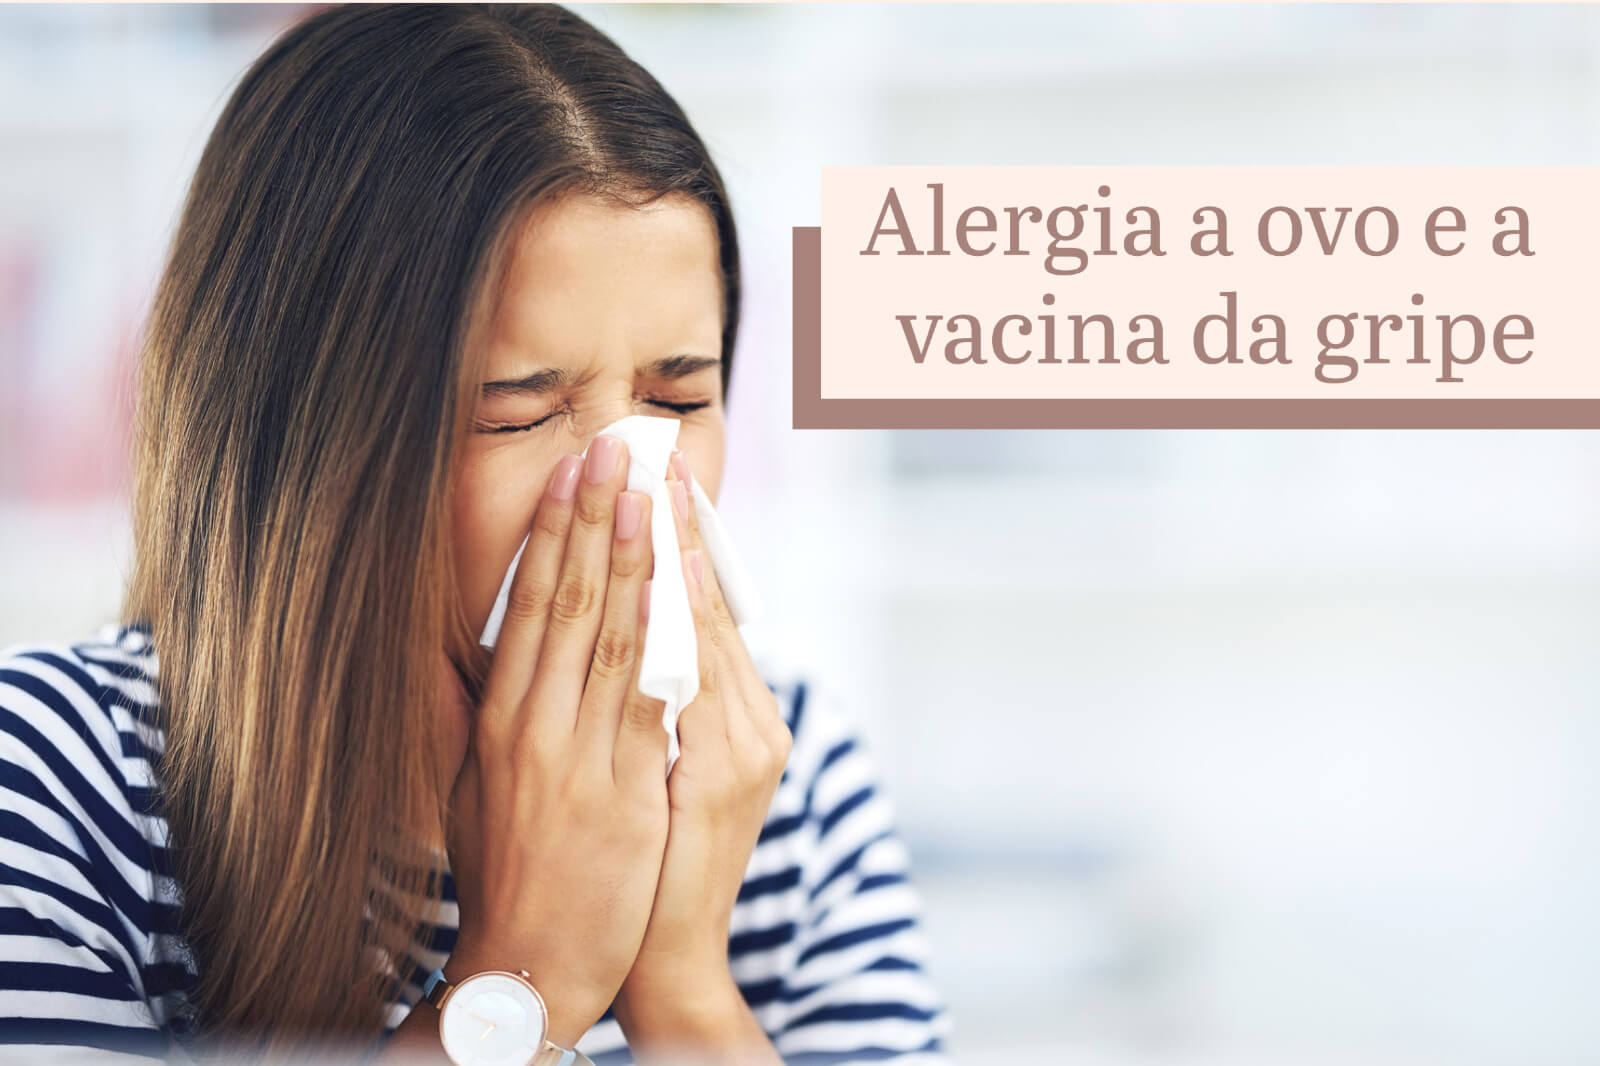 Alergia a ovo e a vacina da gripe